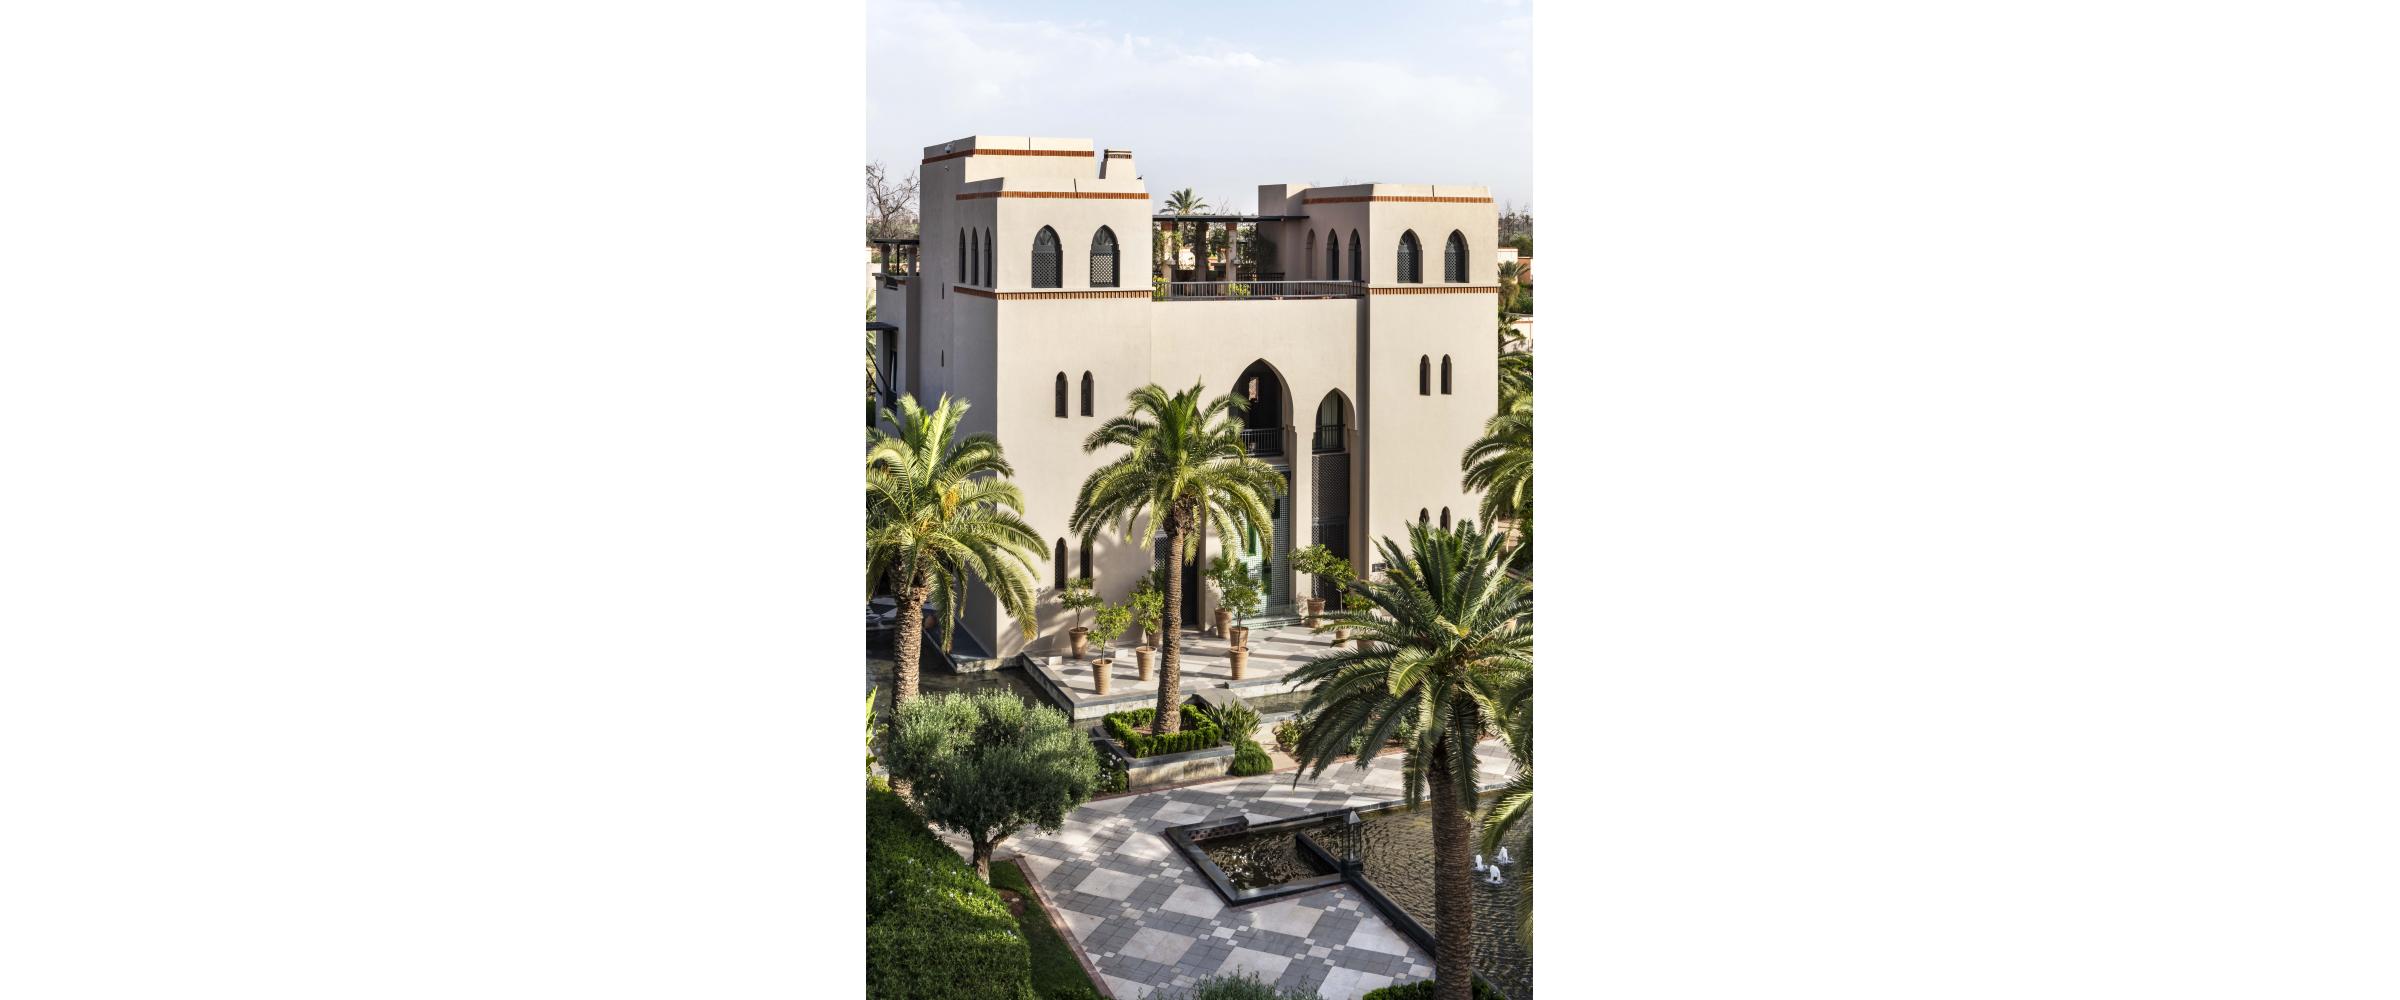 Four Seasons Marrakech - DL2A Architecture